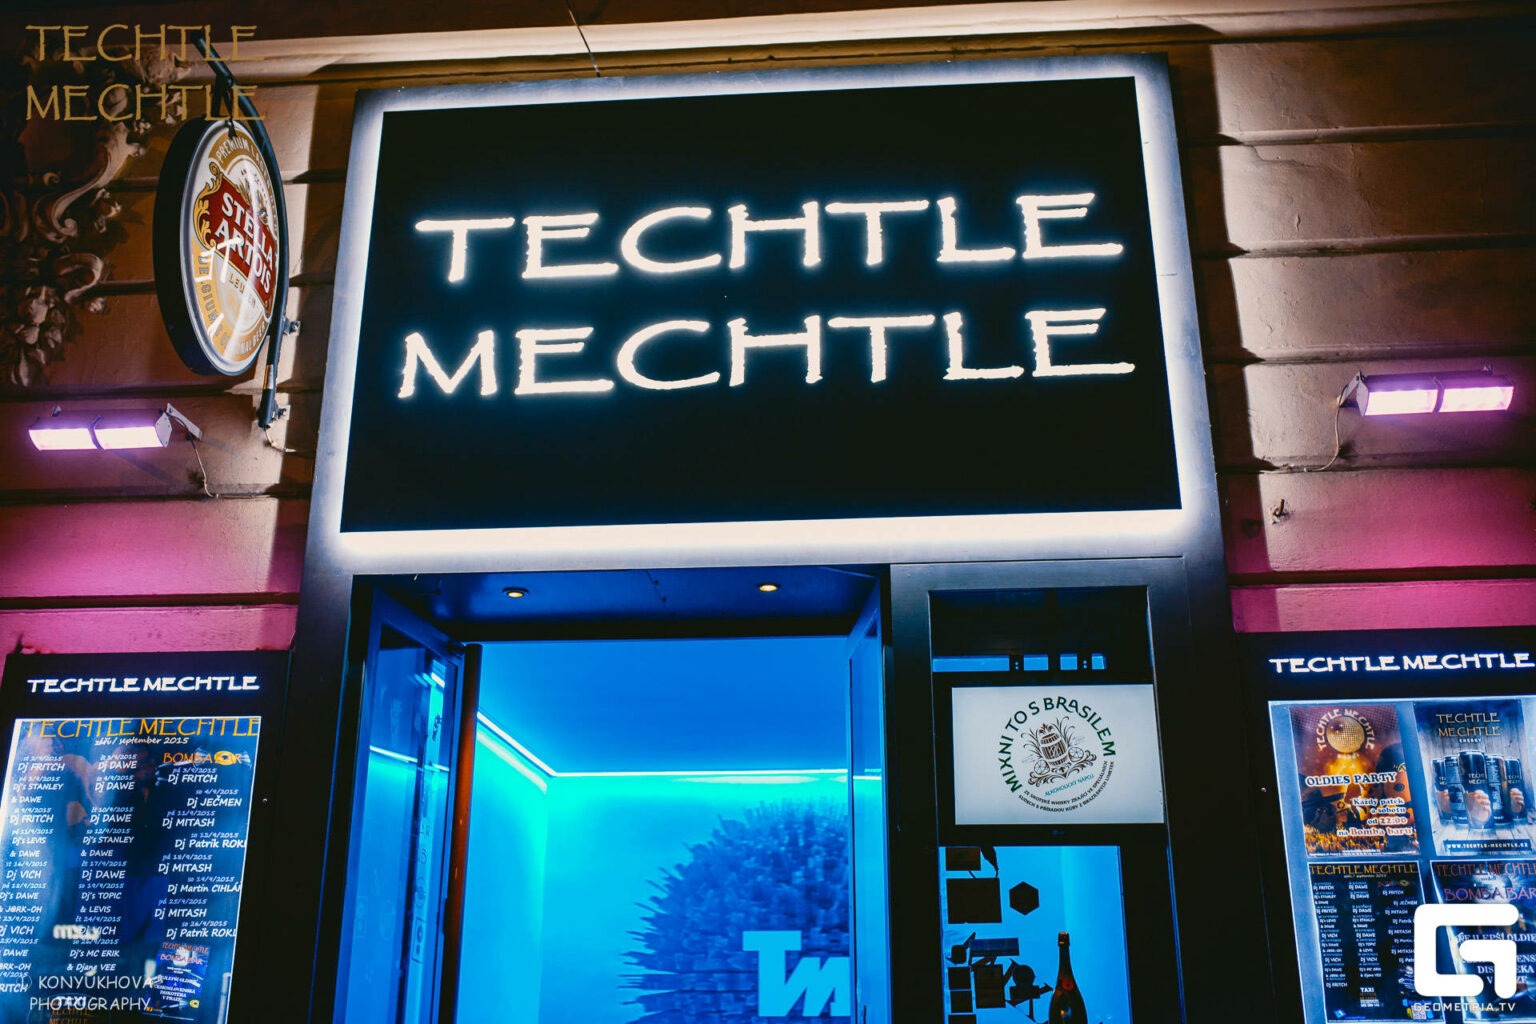 zdroj www.techtle-mechte.cz